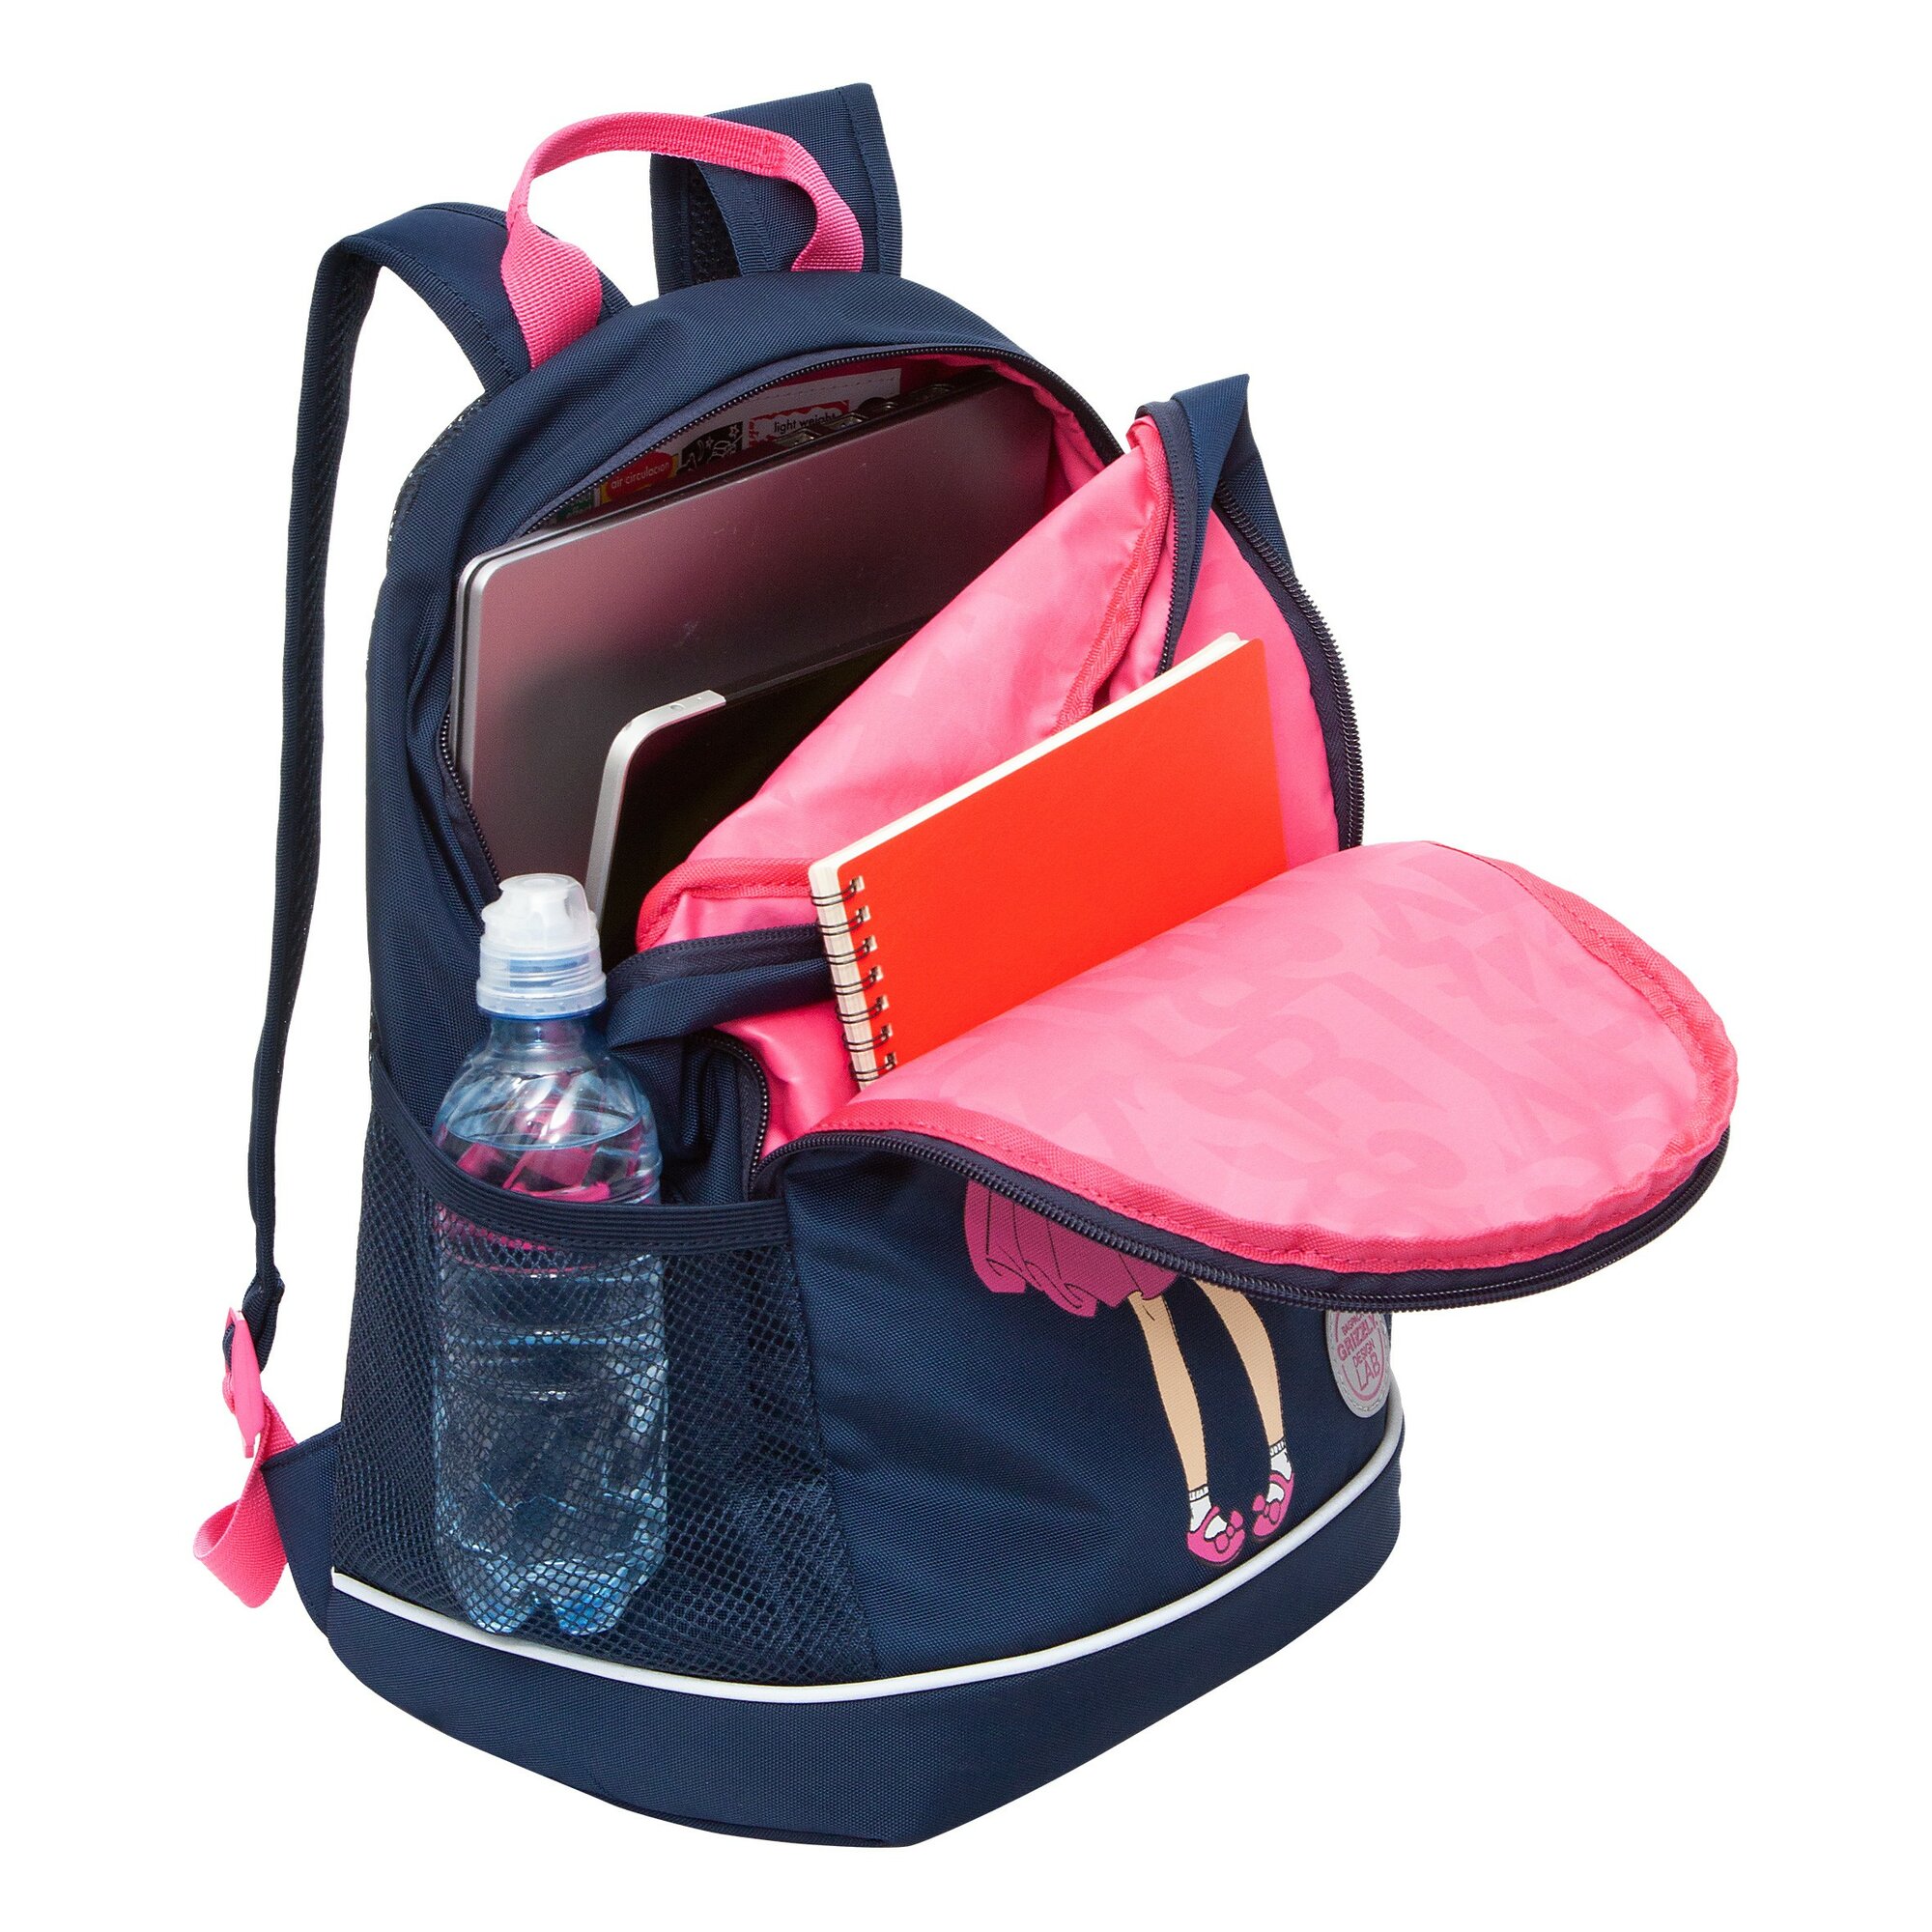 Рюкзак школьный GRIZZLY с карманом для ноутбука 13", жесткой спинкой, двумя отделениями, для девочки RG-363-9/1